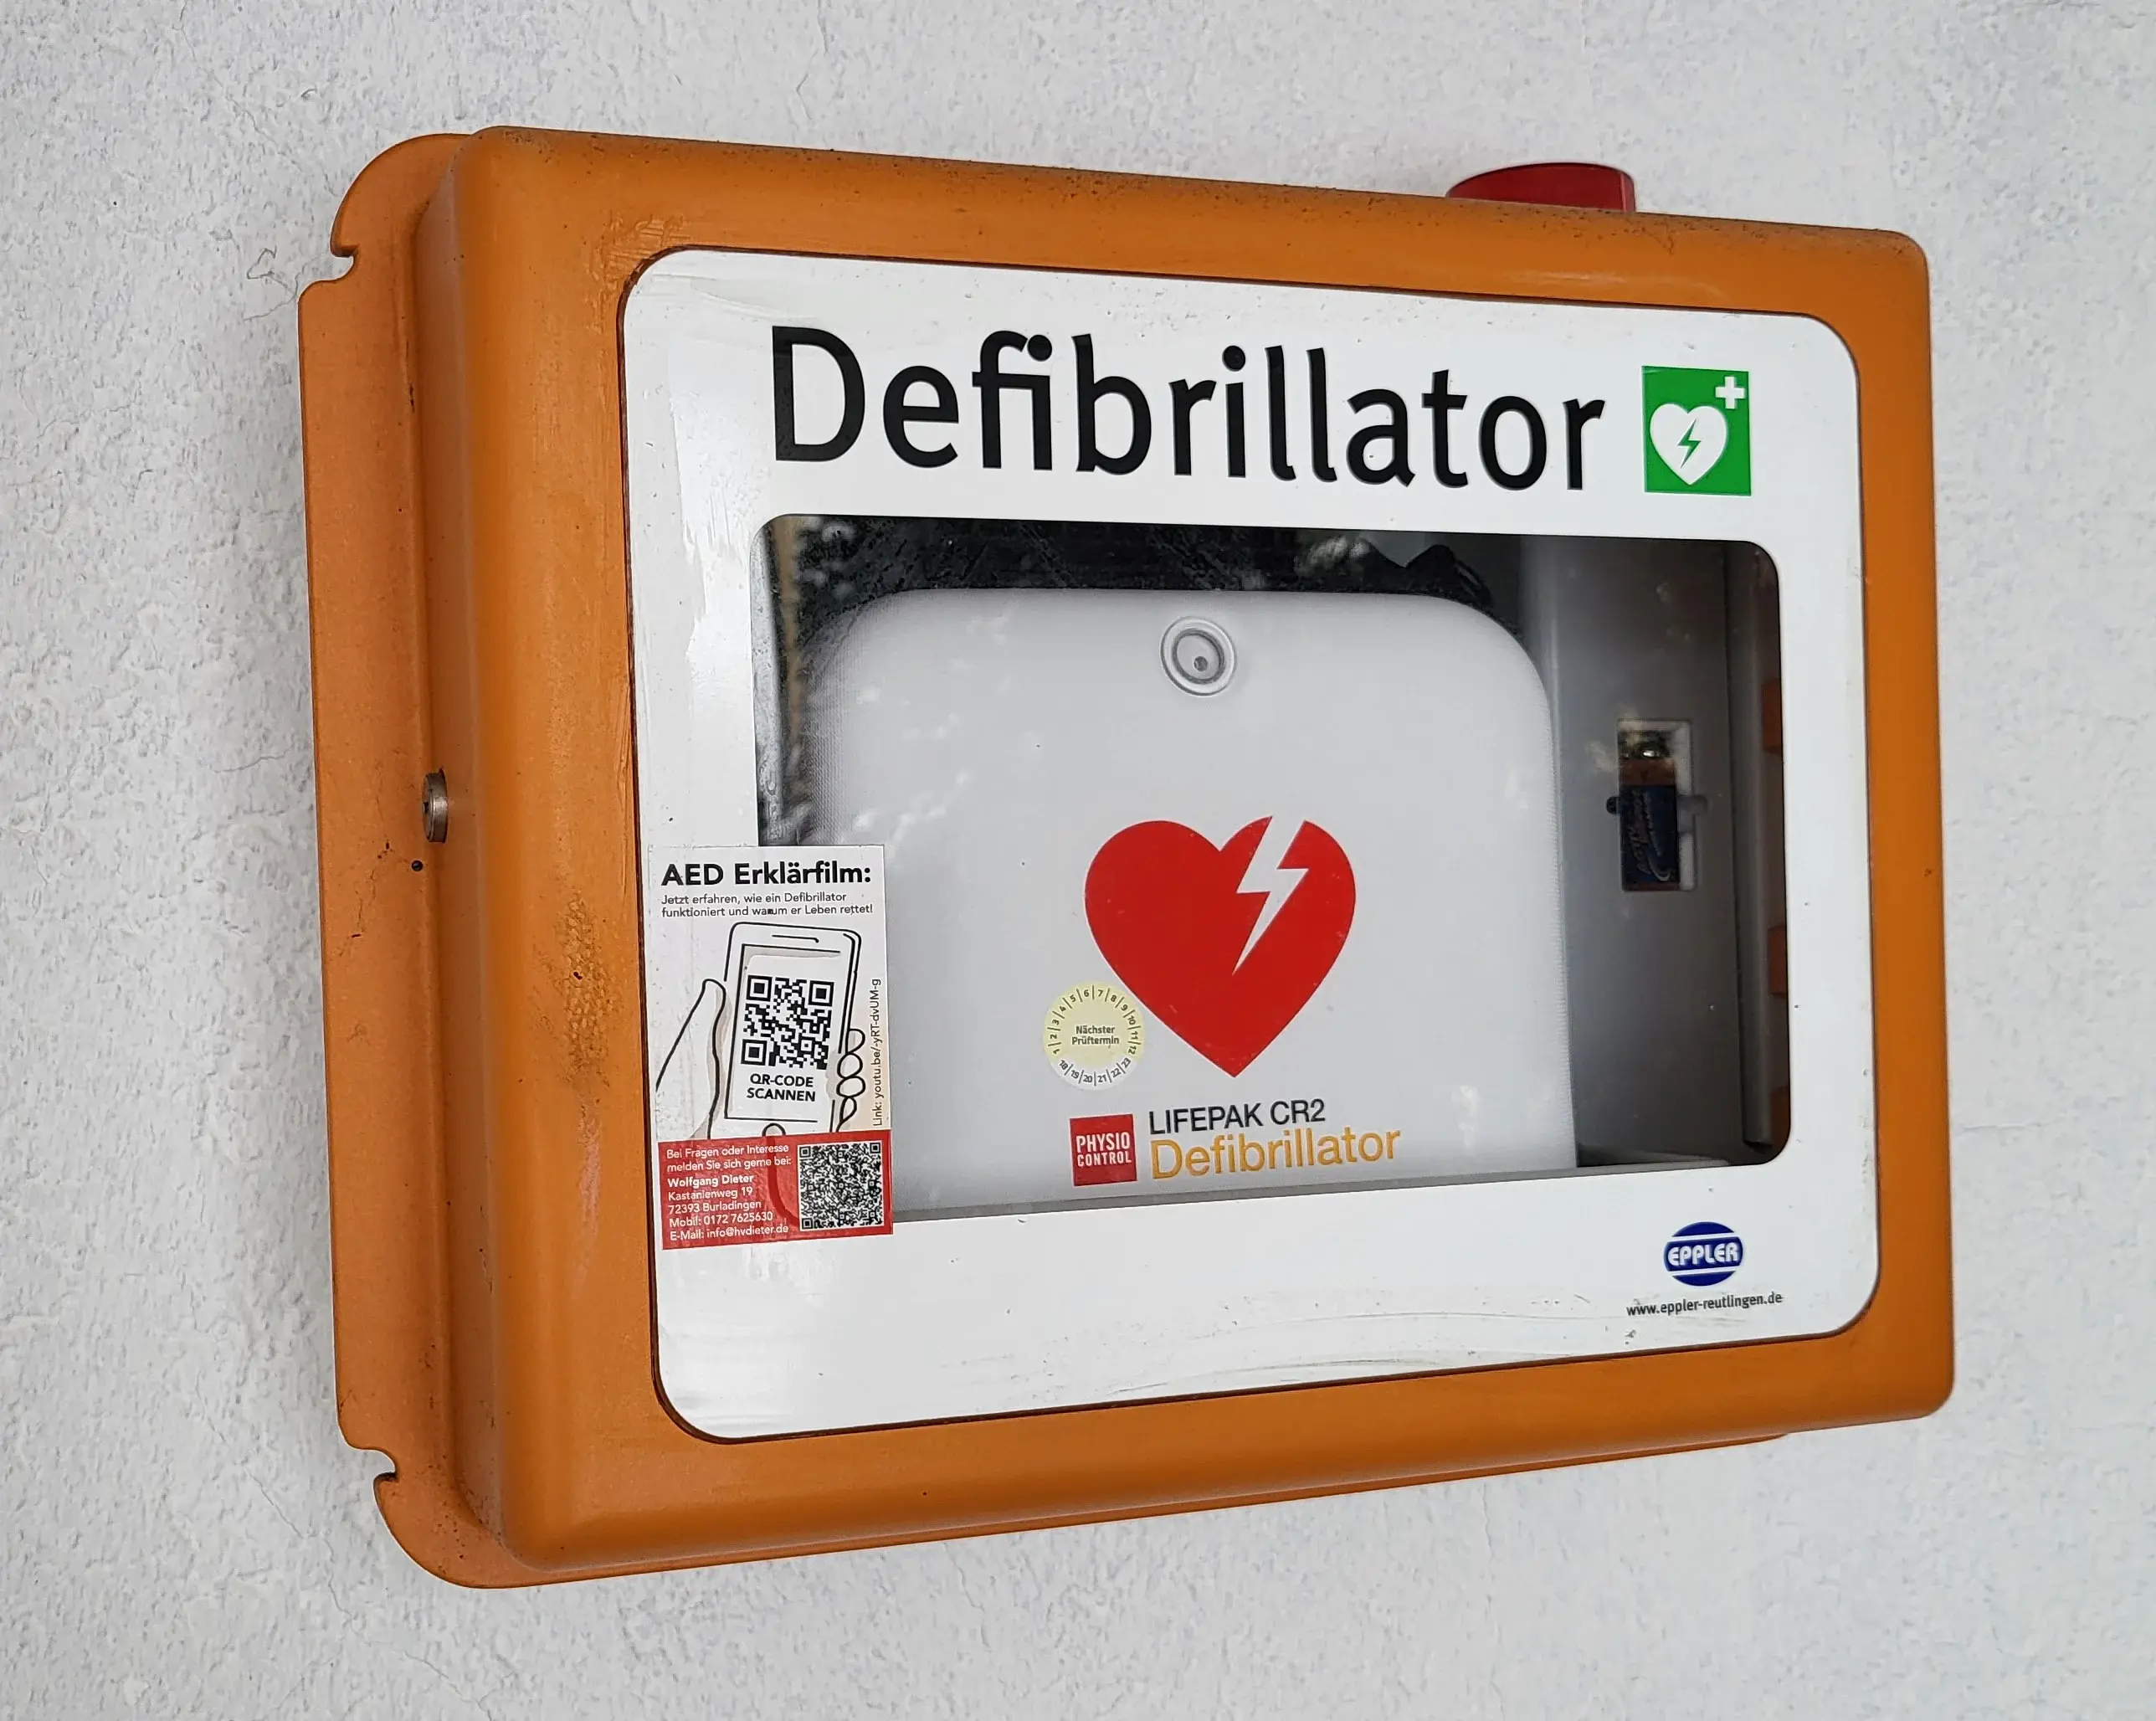 Auf dem Bild ist der Defibrillator in einem orange-weißen Kasten zu sehen. In der Mitte ist ein rotes Herz auf dem weißen Gerät. Es steht Defibrillator drauf und daneben ist ein kleines grünes Quadrat, darin ist ein weißes Herz mit einem grünen Pfeil und oben rechts in diesem kleinen grünen Quadrat ist noch ein weißes Kreuz darin. Dieses ist das Symbol für den Defibrillator